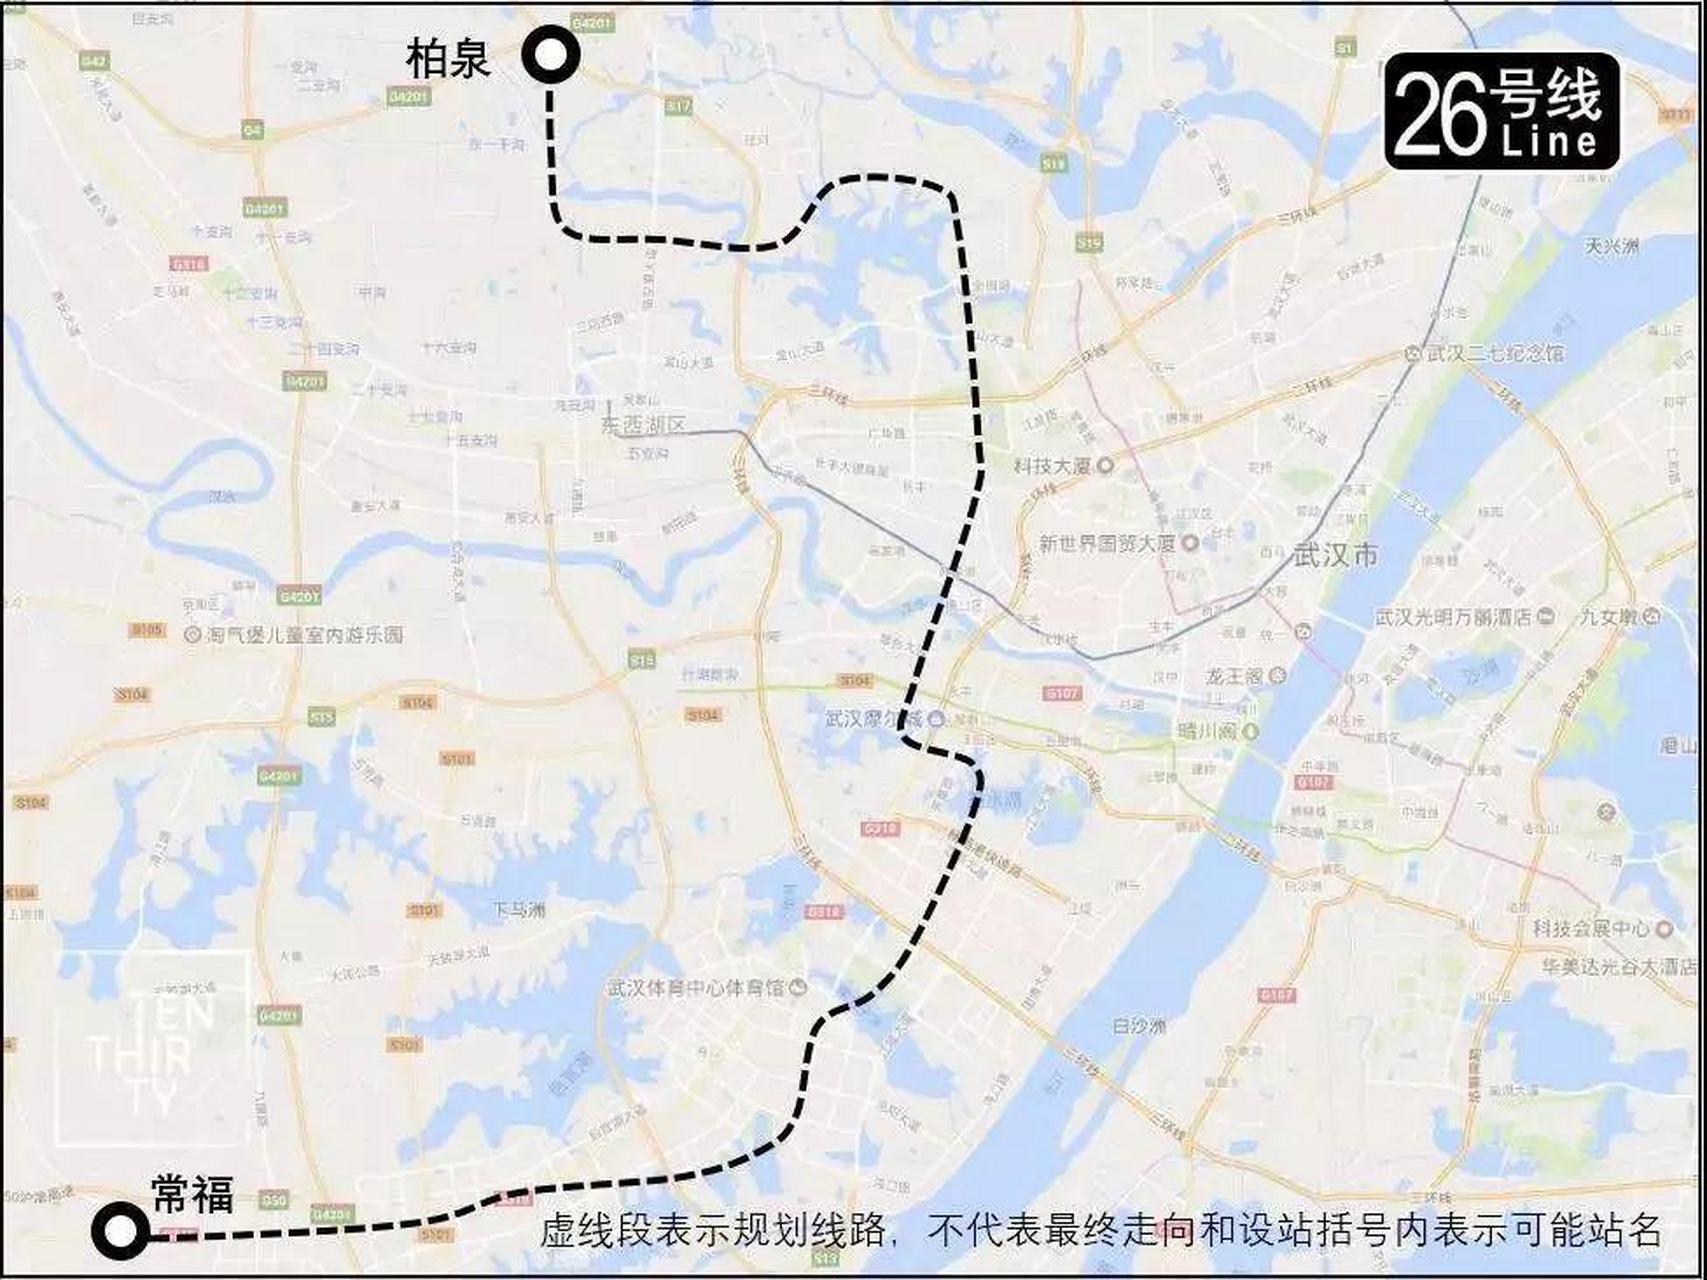 武汉地铁26号线南段预计将改线,现正征求意见